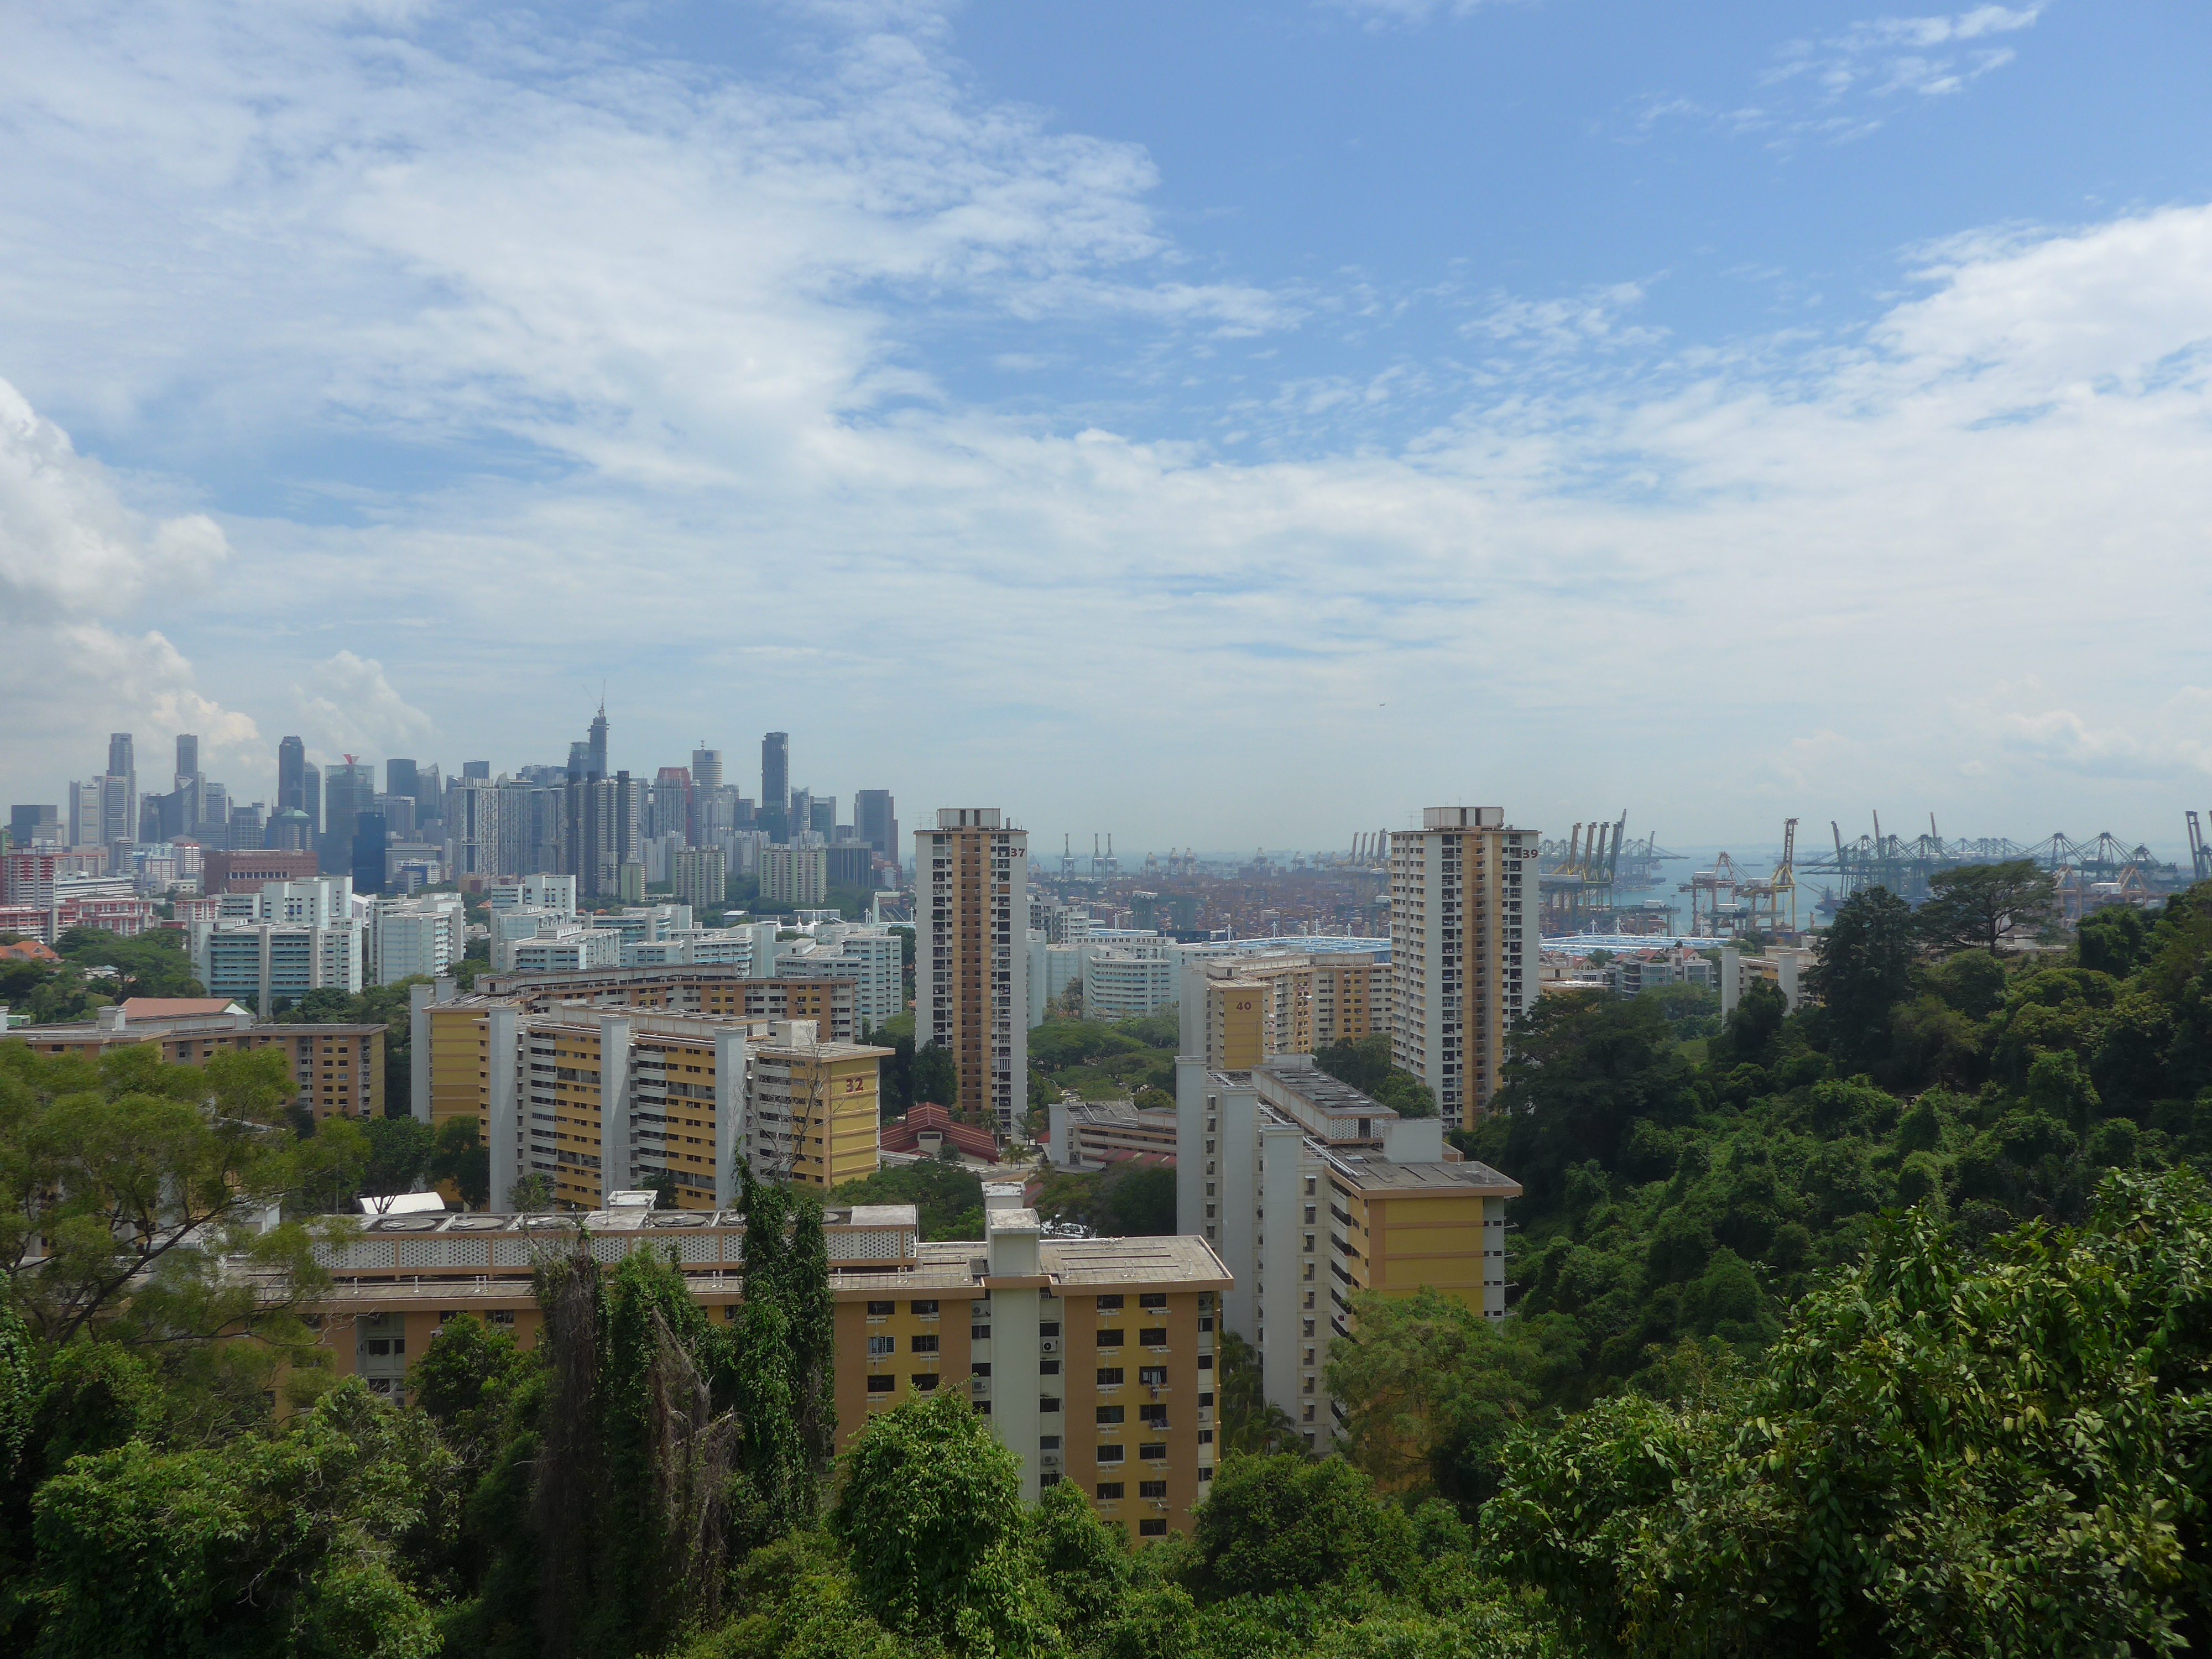 Hochhäuser, Grün und Hafen. Das beschreibt Singapur ganz gut :)